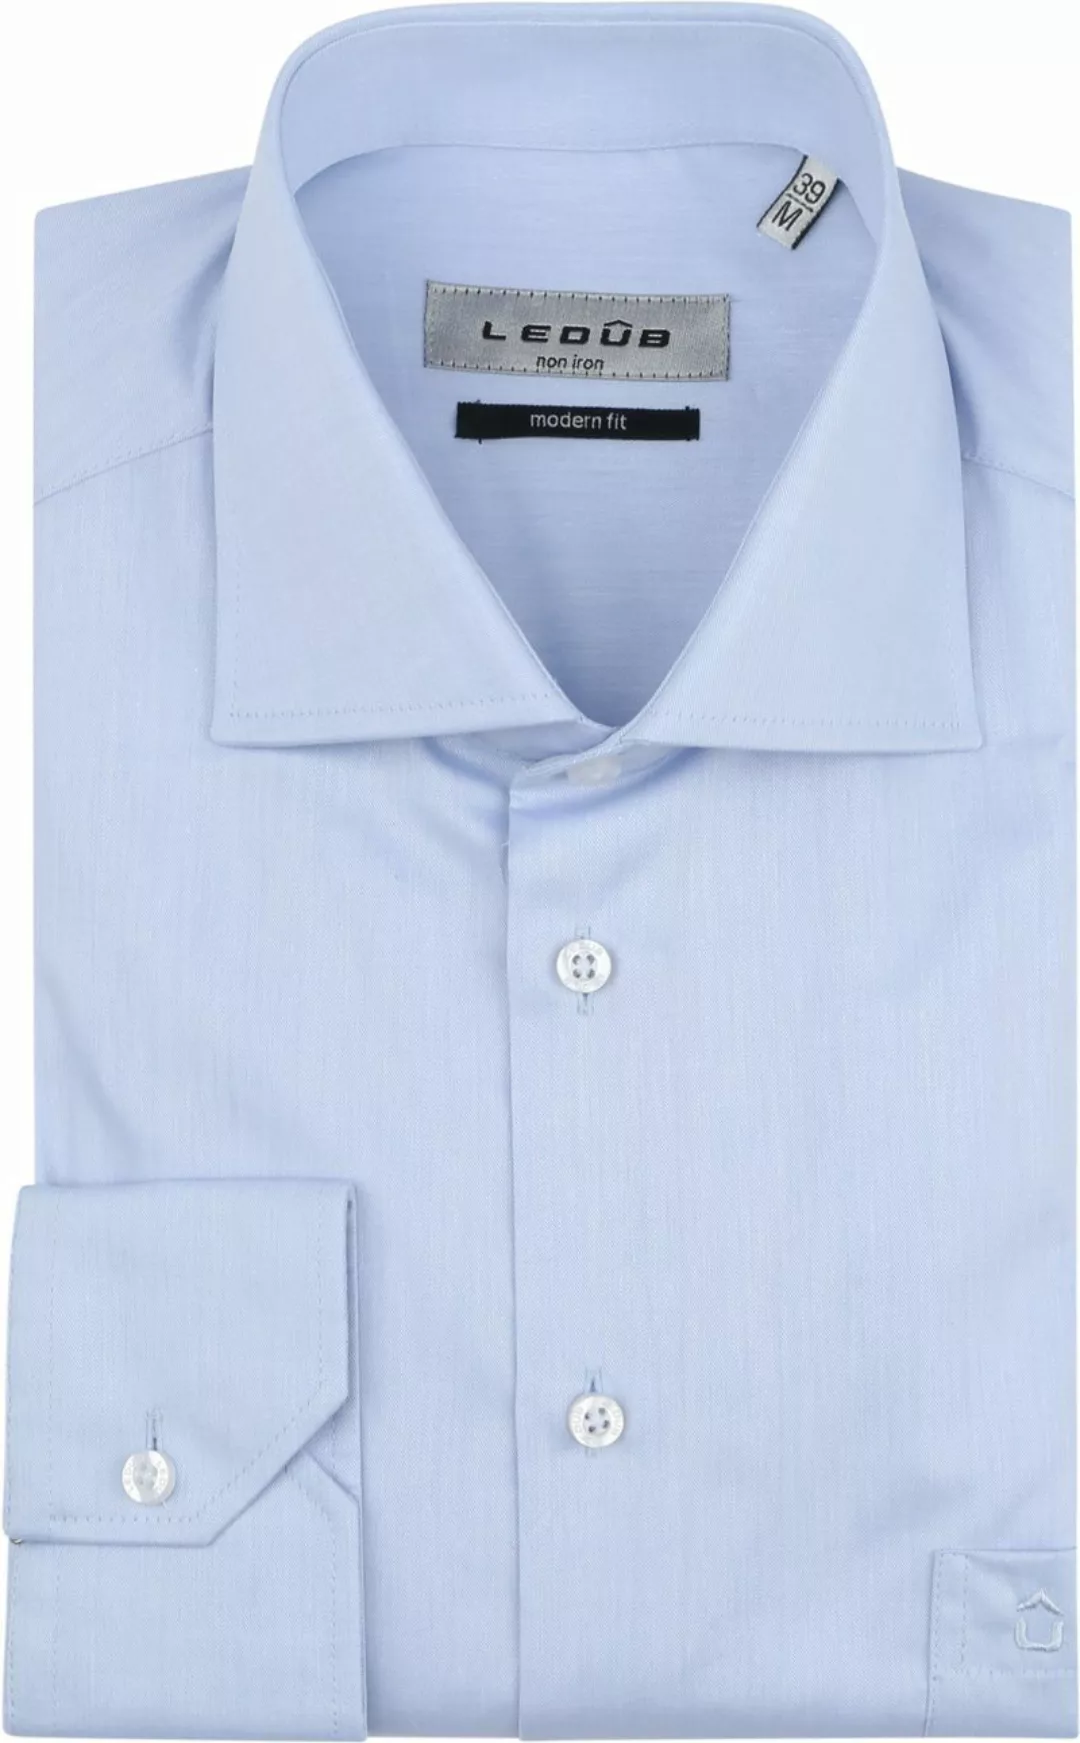 Ledub Hemd Hellblau Brusttassche - Größe 40 günstig online kaufen